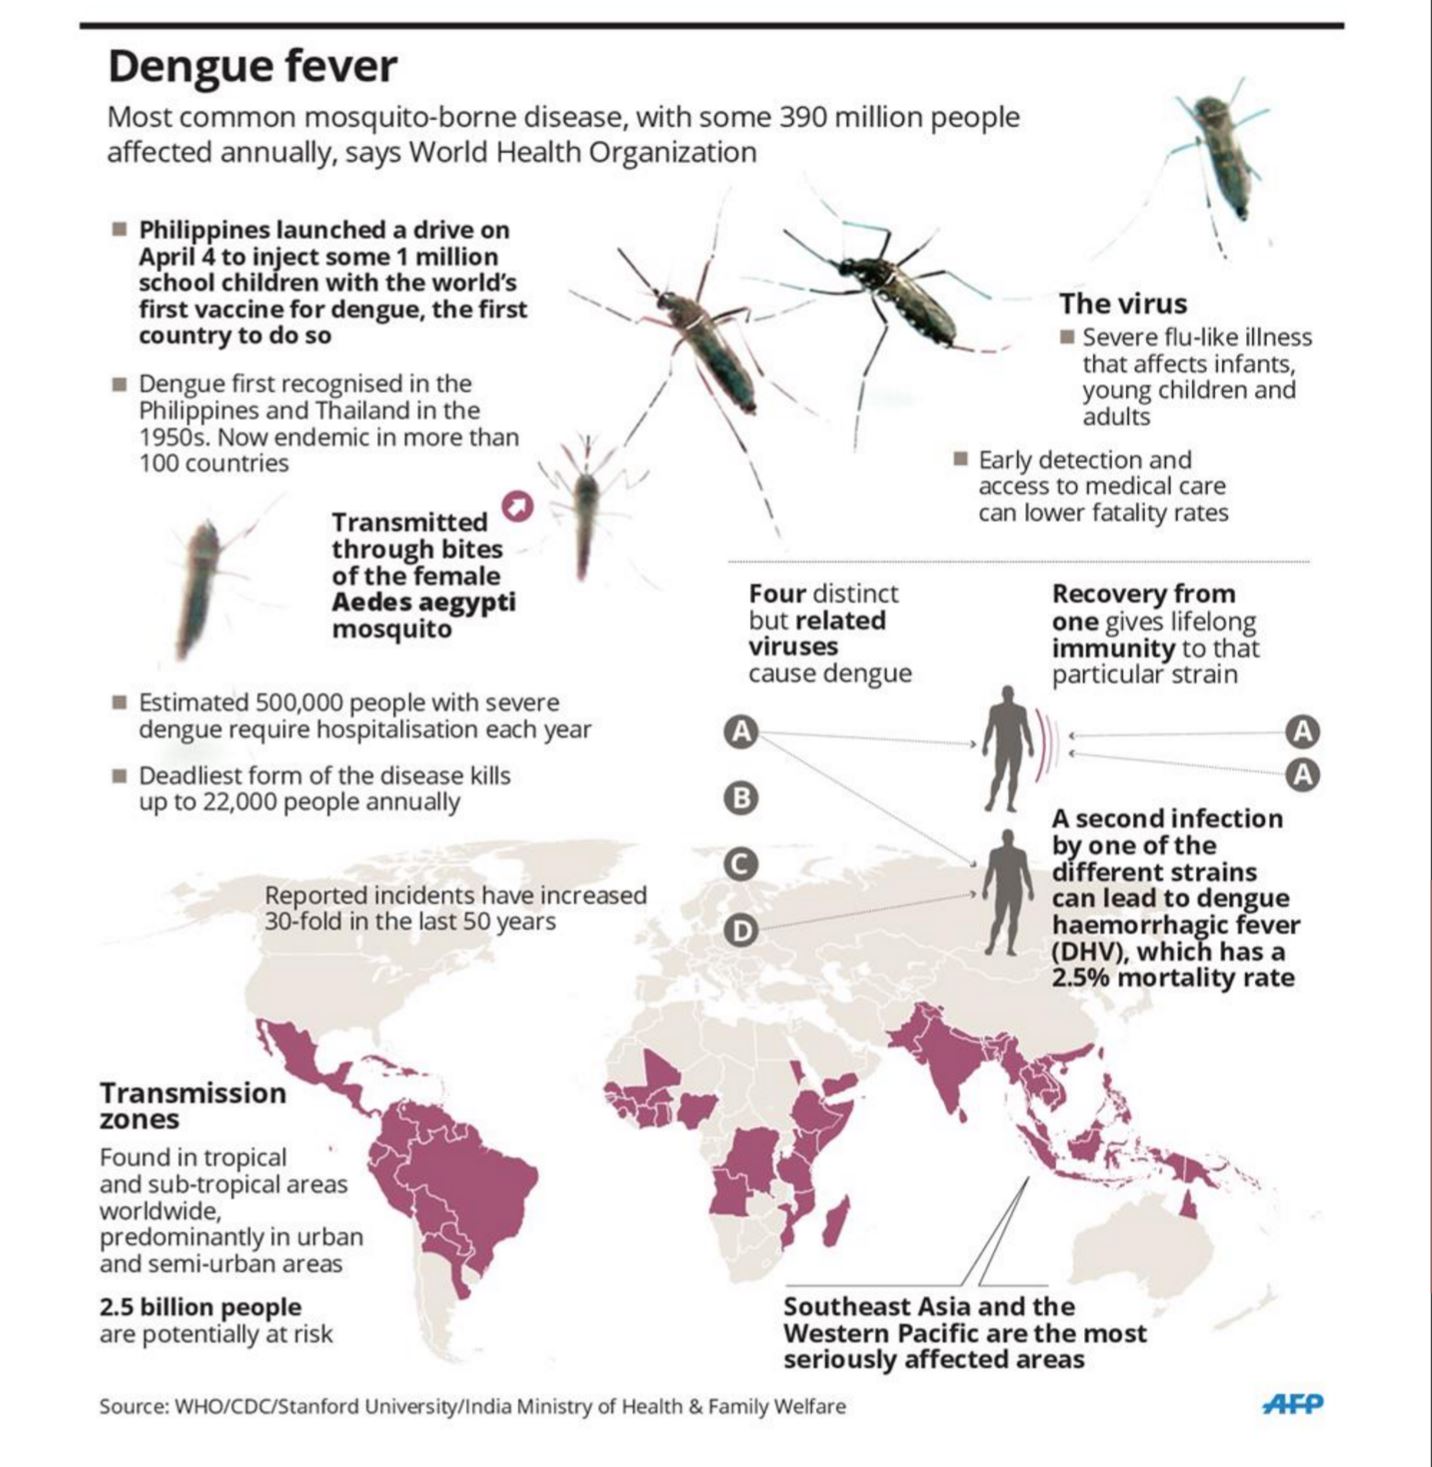 Process of Dengue fever